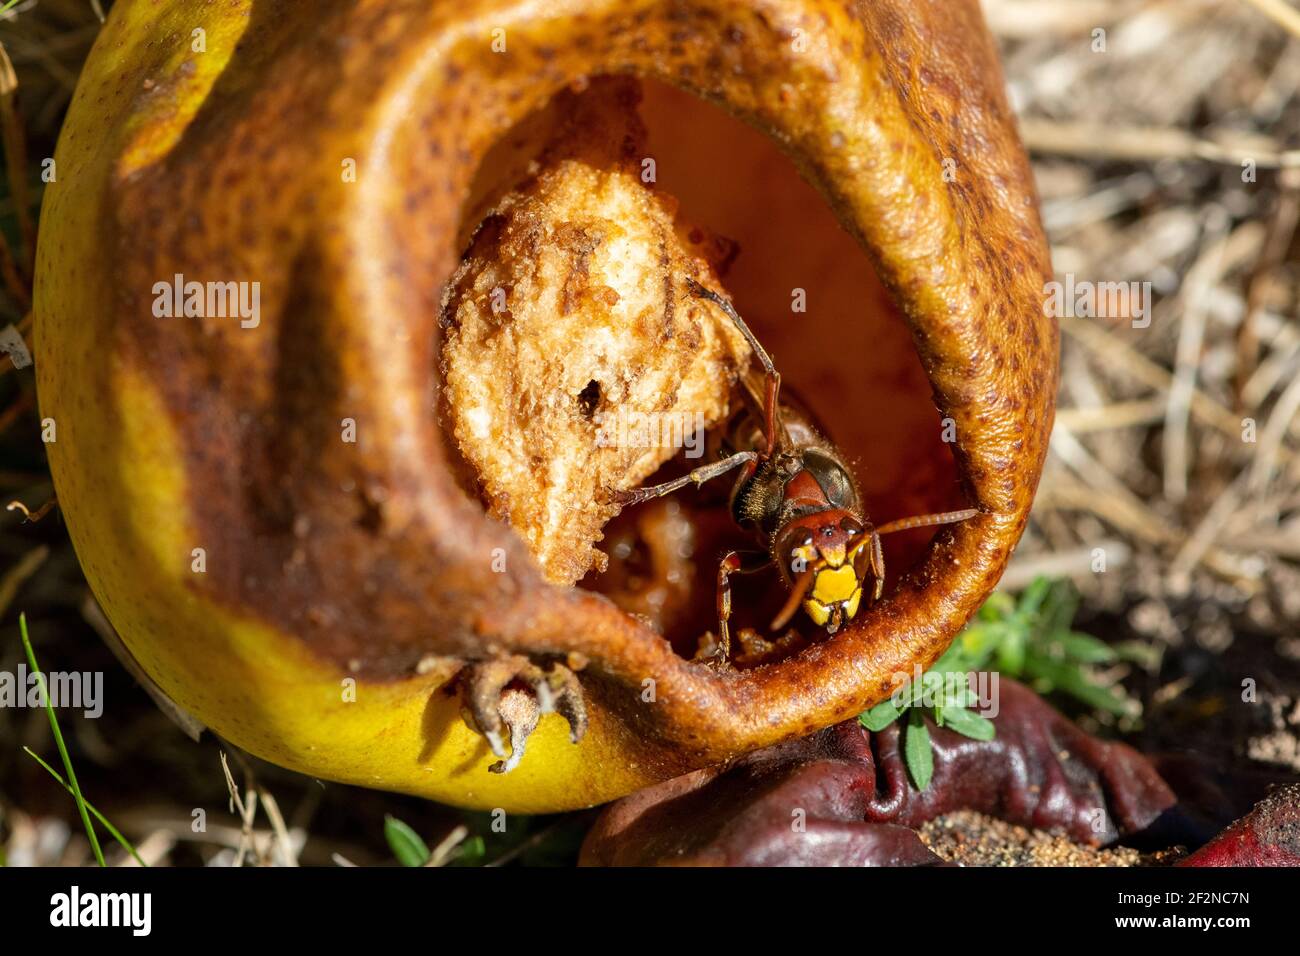 Hornet (Vespa crabro) on a fallen pear. Stock Photo